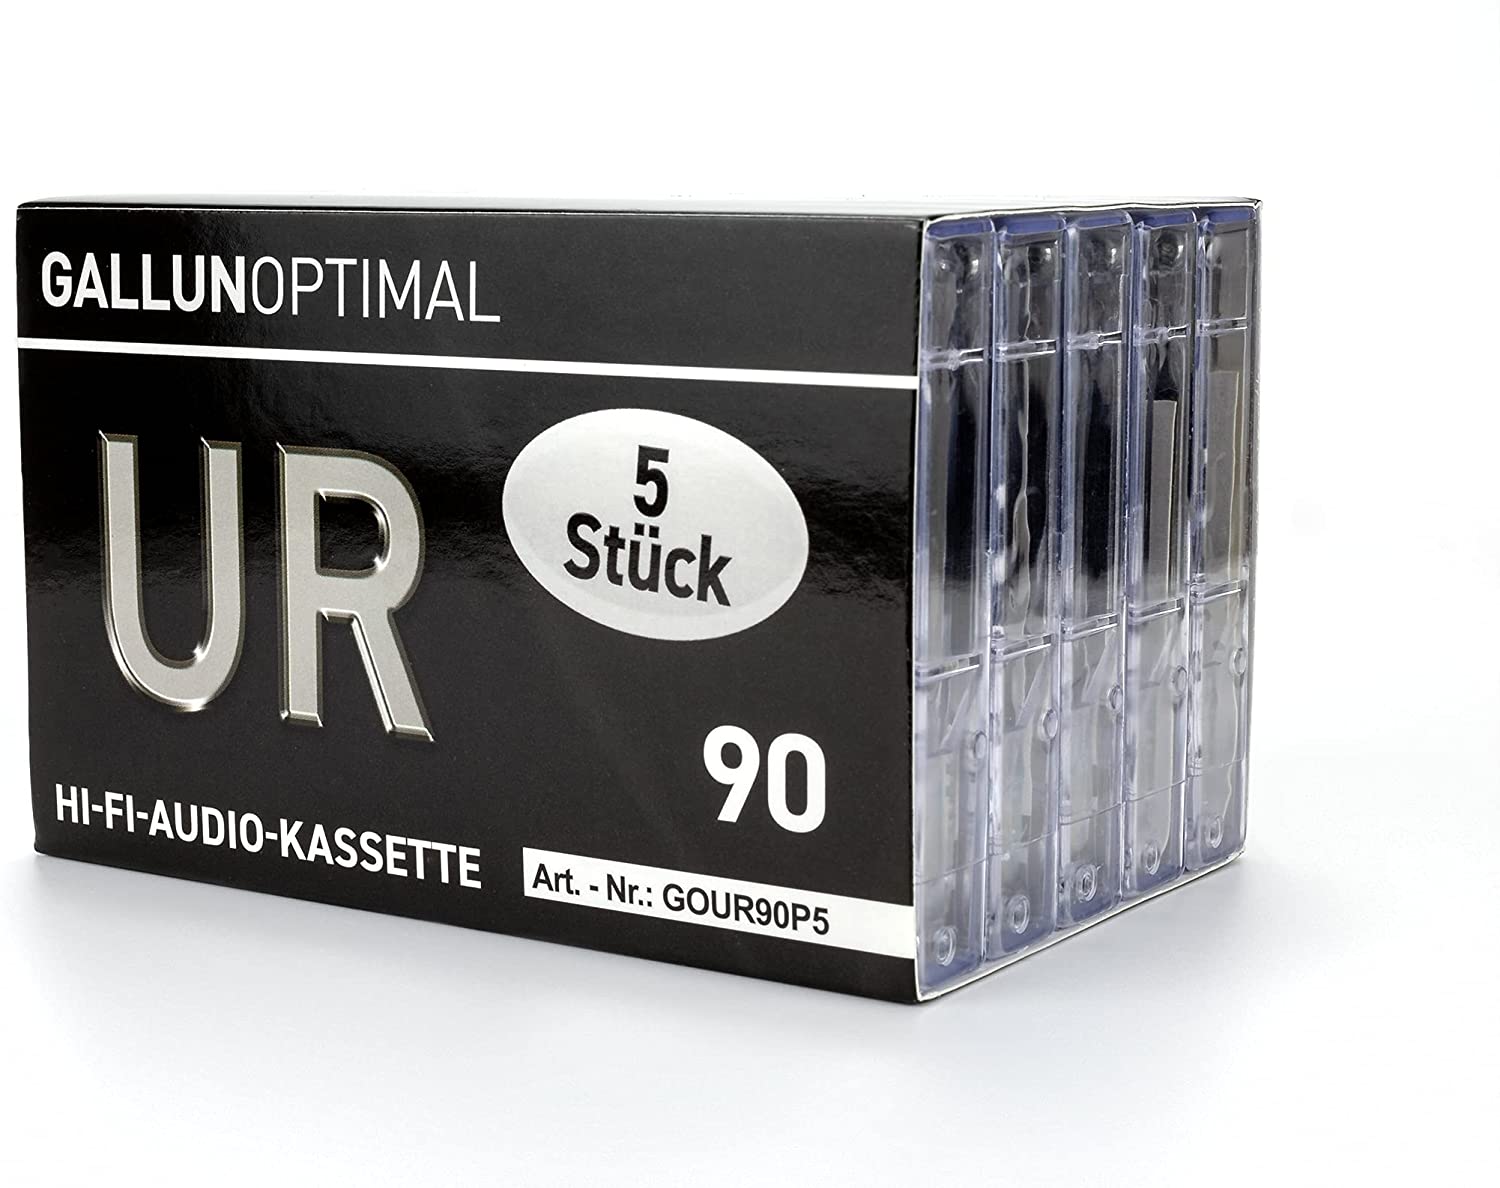 GallunOptimal audiocassettes 5 stuks 90 minuten UR90